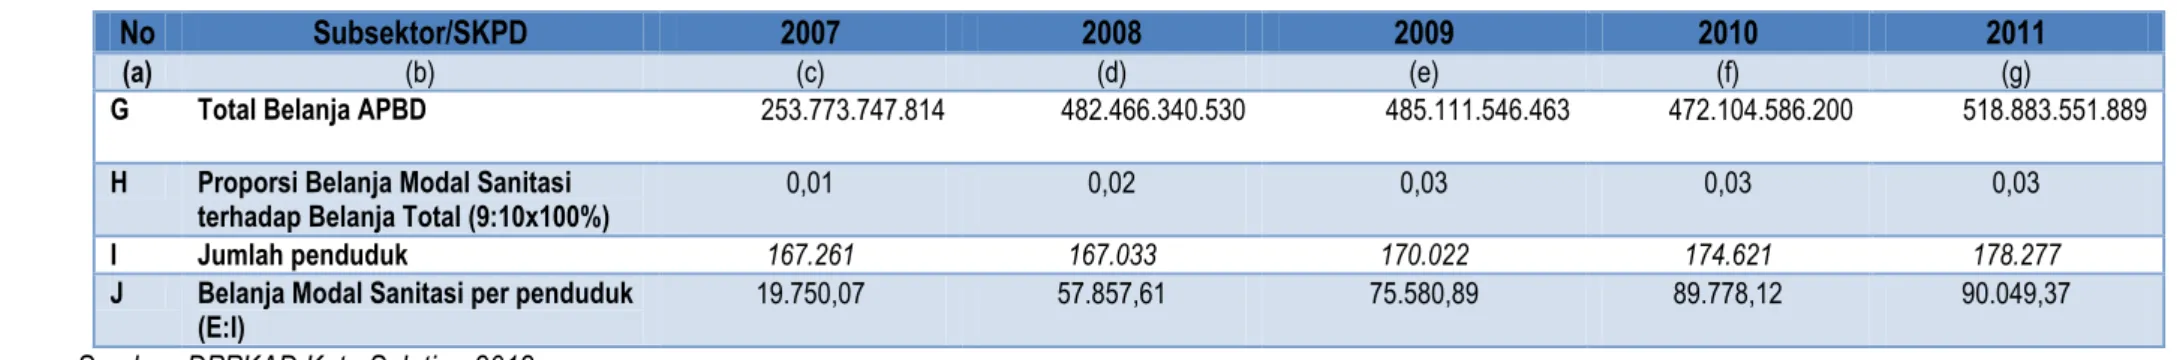 Tabel  Realisasi Retribusi Sanitasi per Subsektor untuk periode 5 tahun (Rp.)